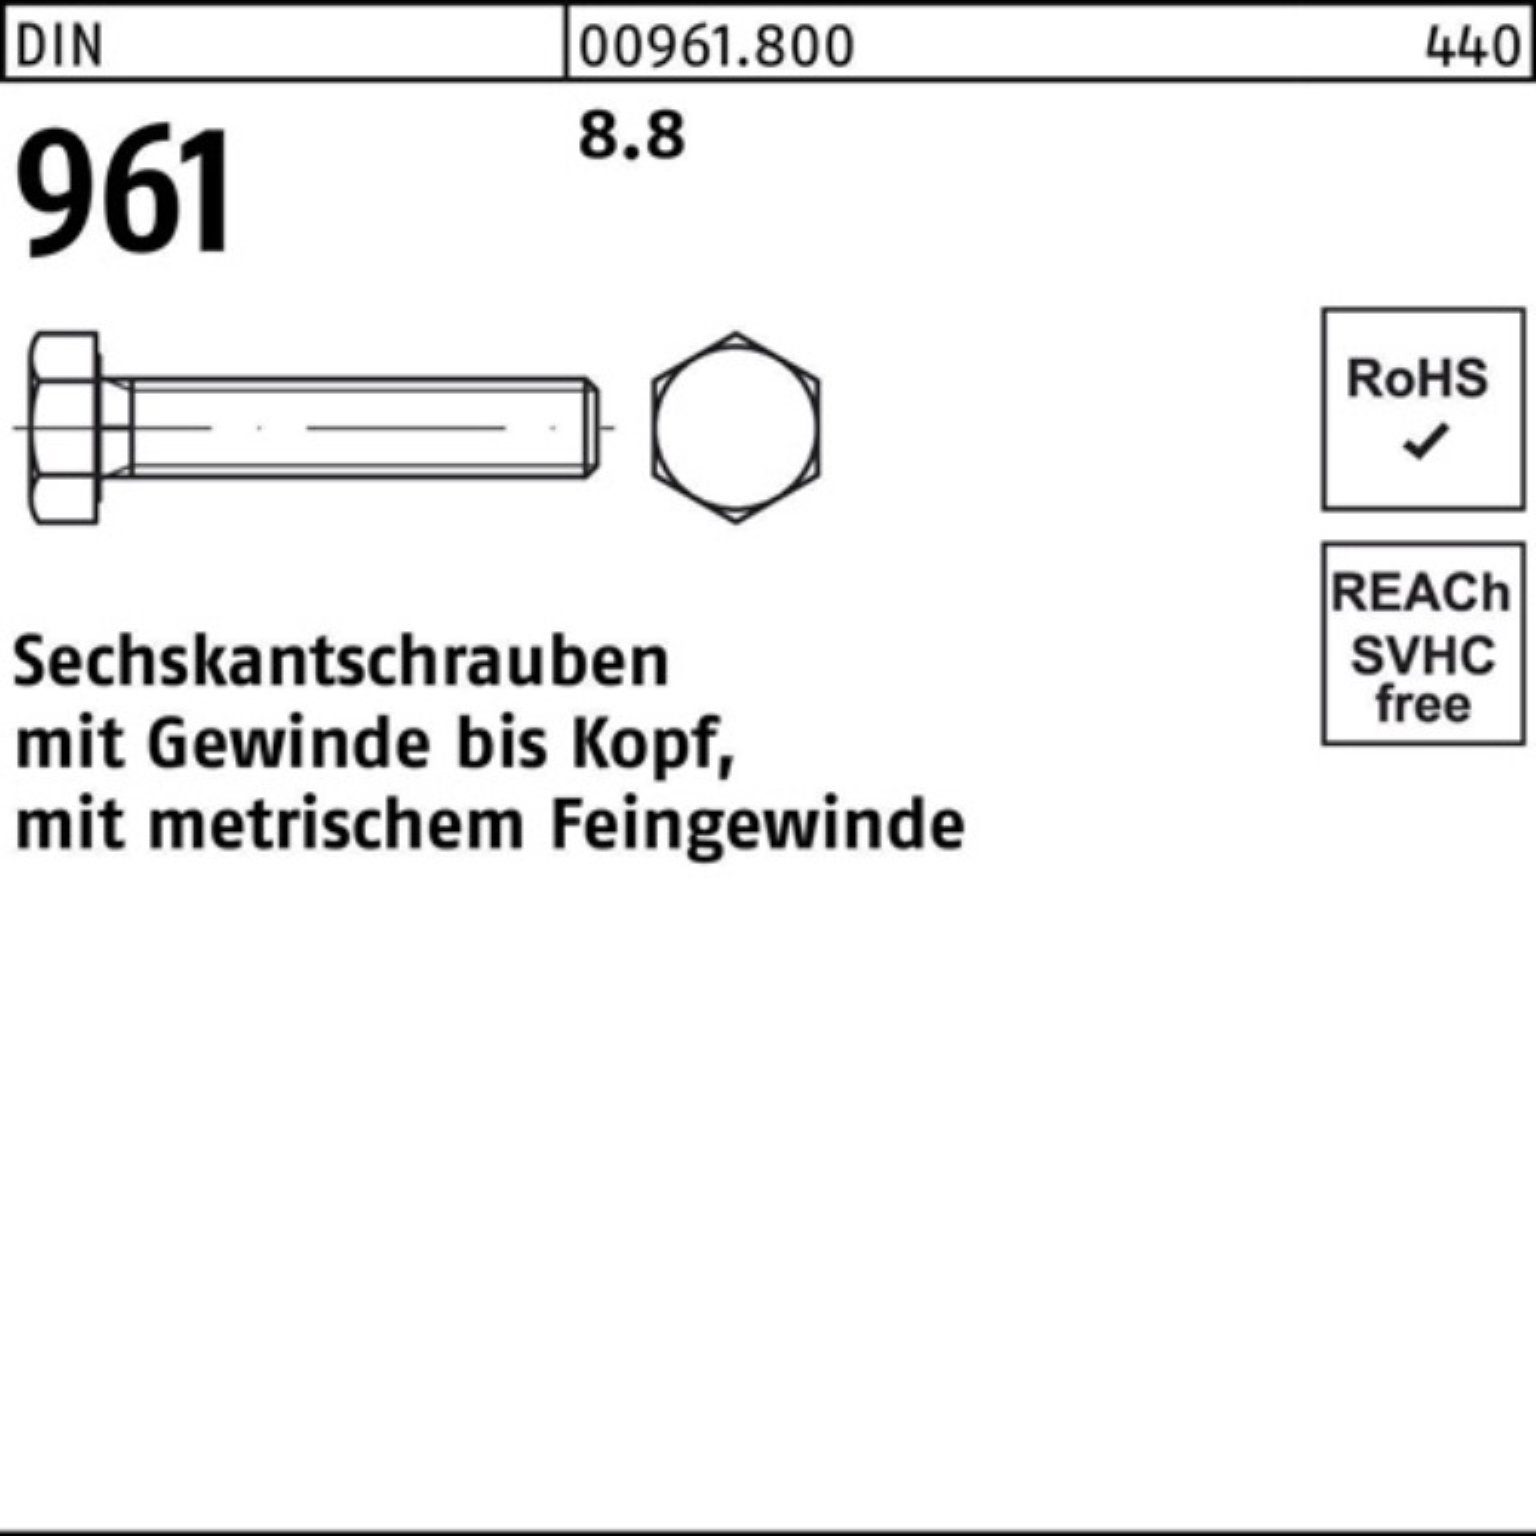 Reyher Sechskantschraube Sechskantschraube 8.8 VG 100er DIN 1 DIN M30x2x Pack 961 70 Stück 961